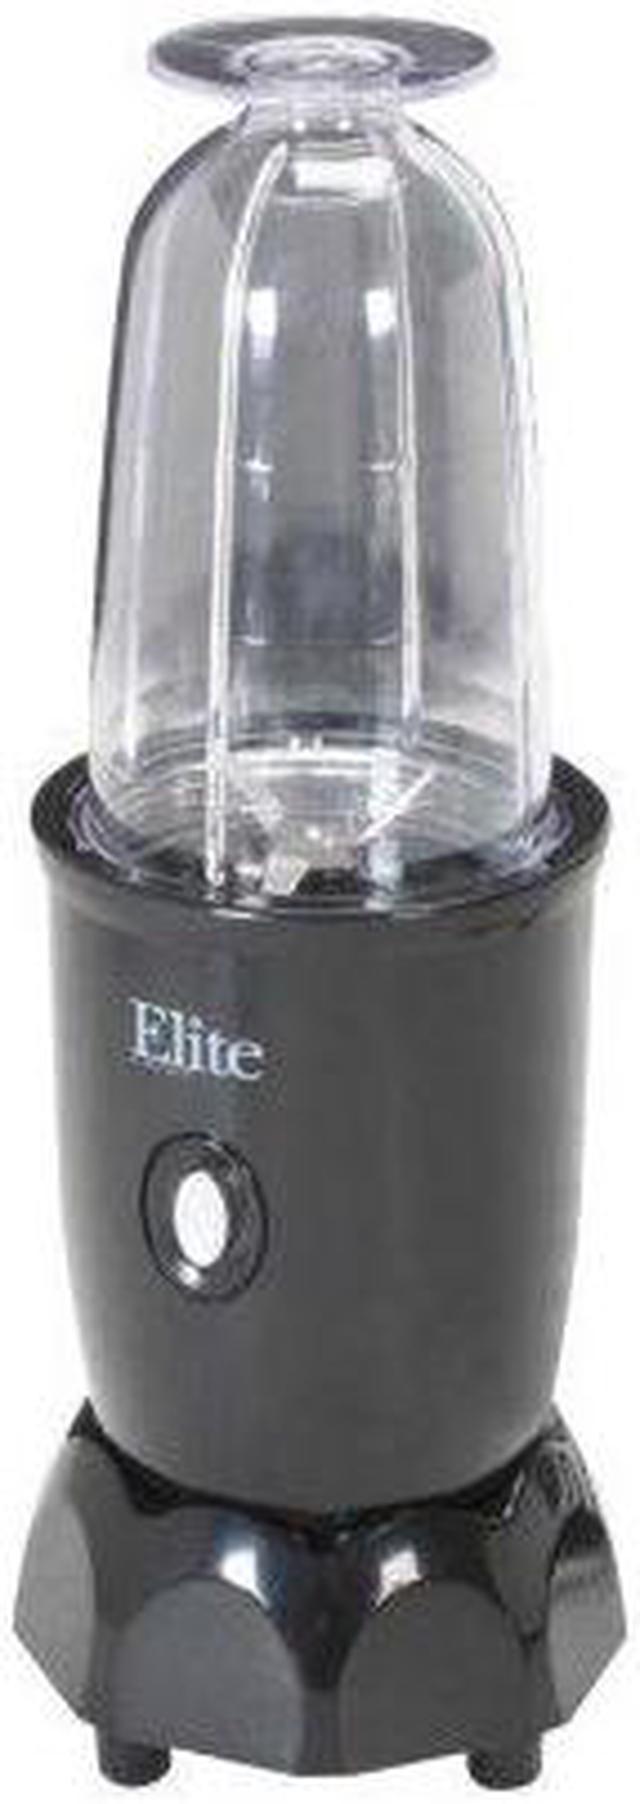 Elite Gourmet 17 Piece Personal Drink Mixer Black EPB-1800 - Best